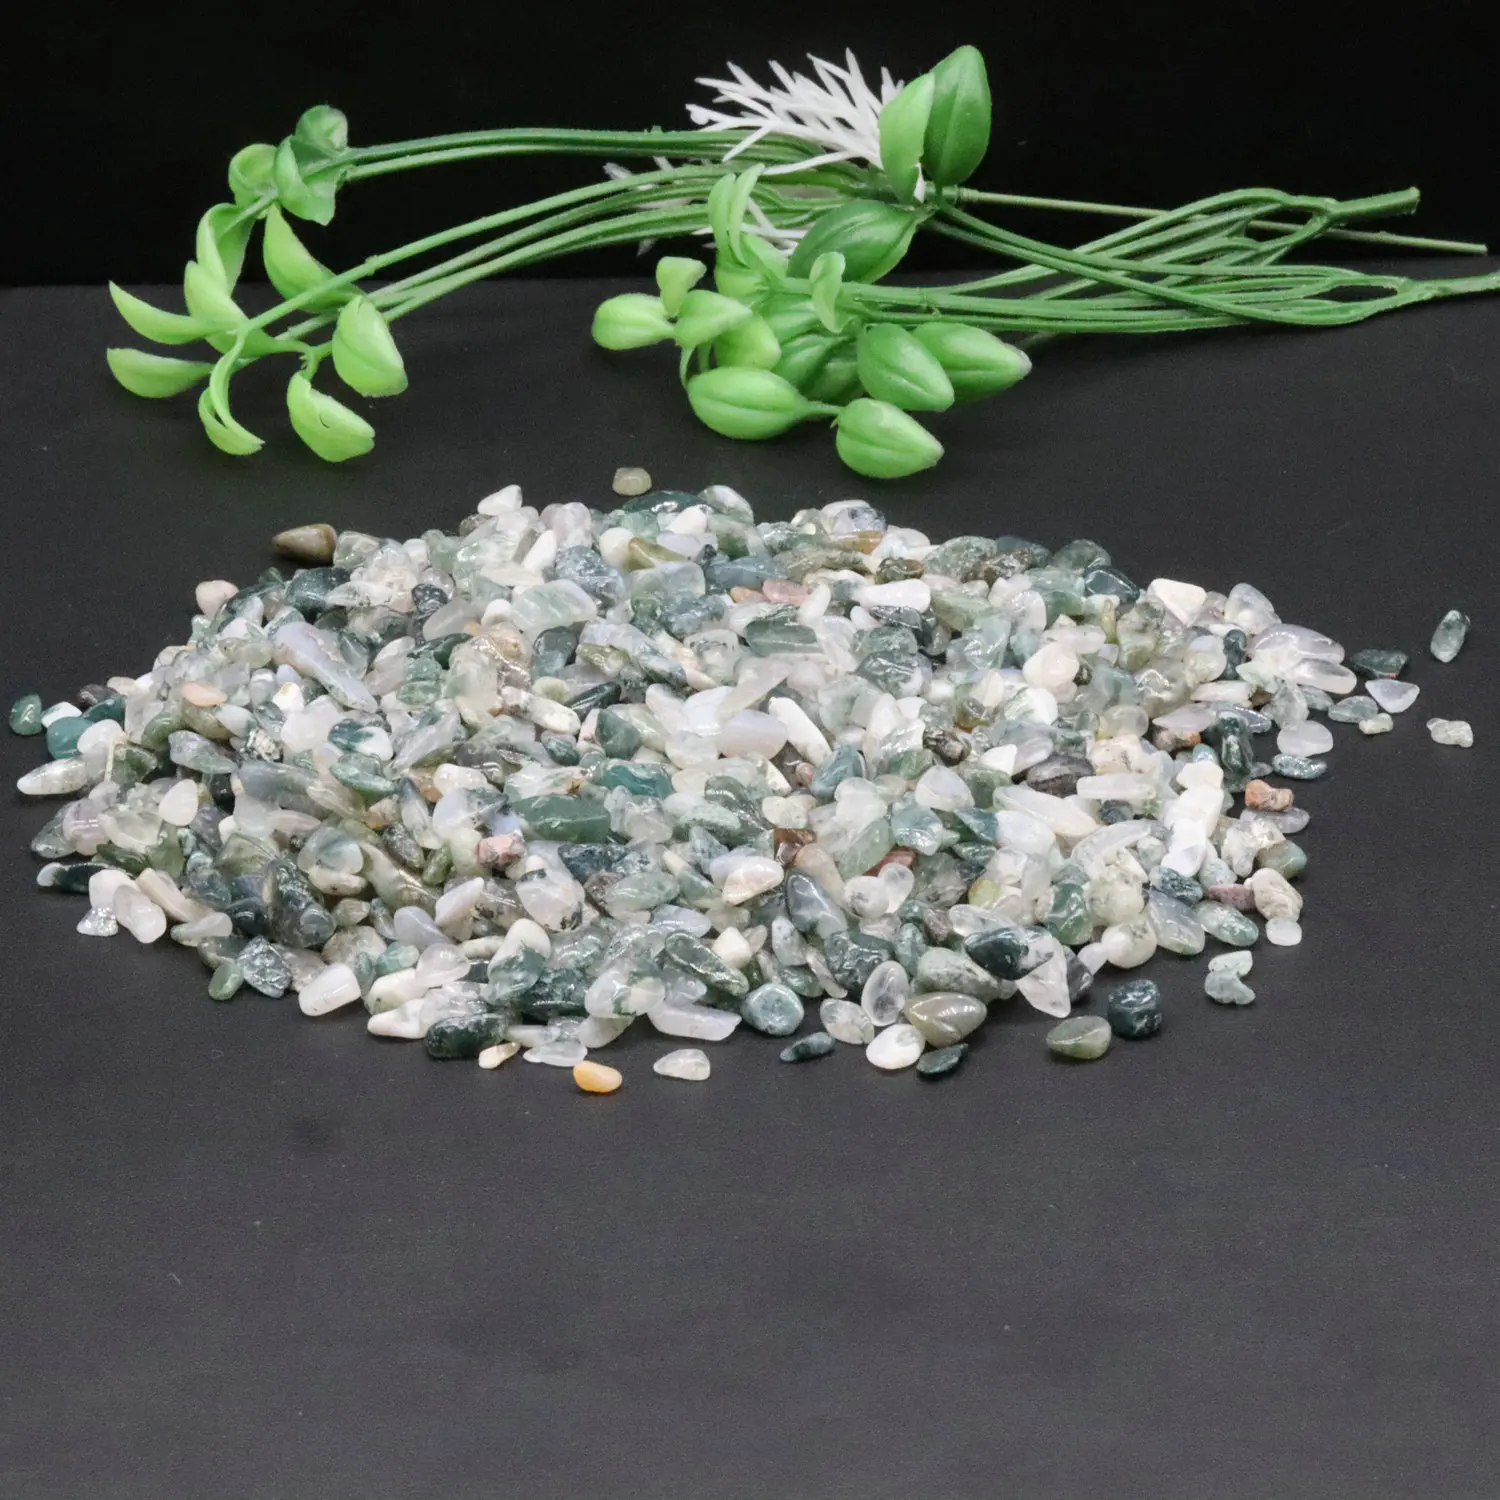 

5-7 мм 500 г натуральный сырой мох Агат Кристалл минералы гравий и камни необработанные драгоценные камни образцы